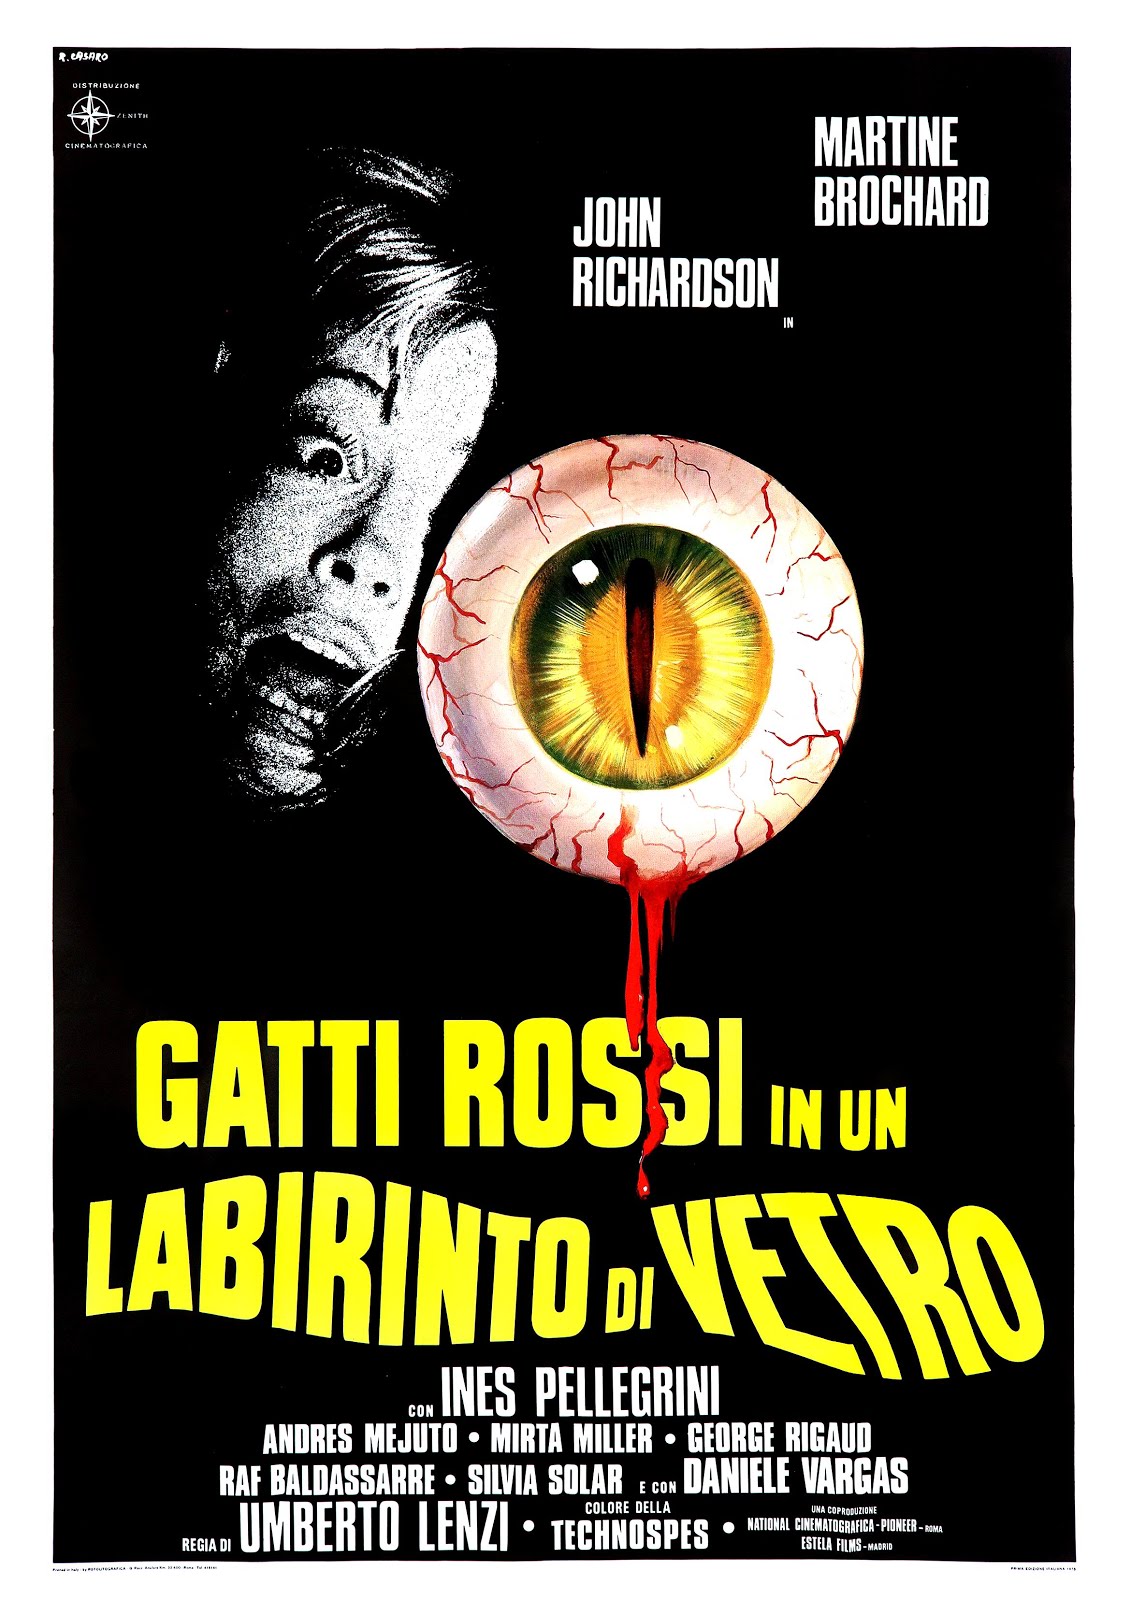 Gatti rossi in un labirinto di vetro (1974) Umberto Lenzi (15.07.1974 / 1974)